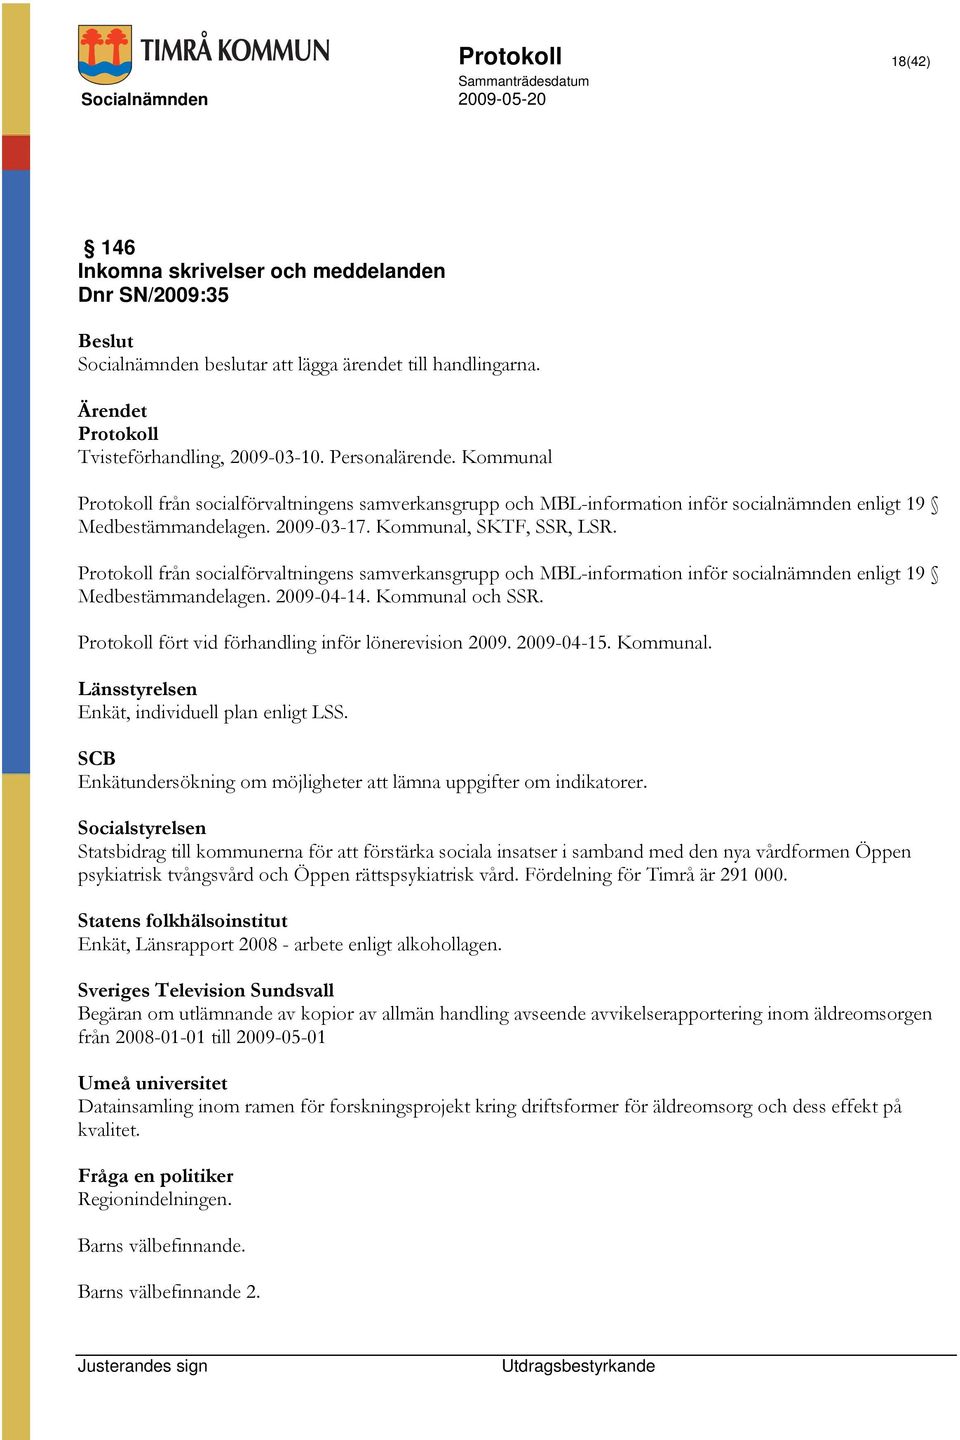 Protokoll från socialförvaltningens samverkansgrupp och MBL-information inför socialnämnden enligt 19 Medbestämmandelagen. 2009-04-14. Kommunal och SSR.